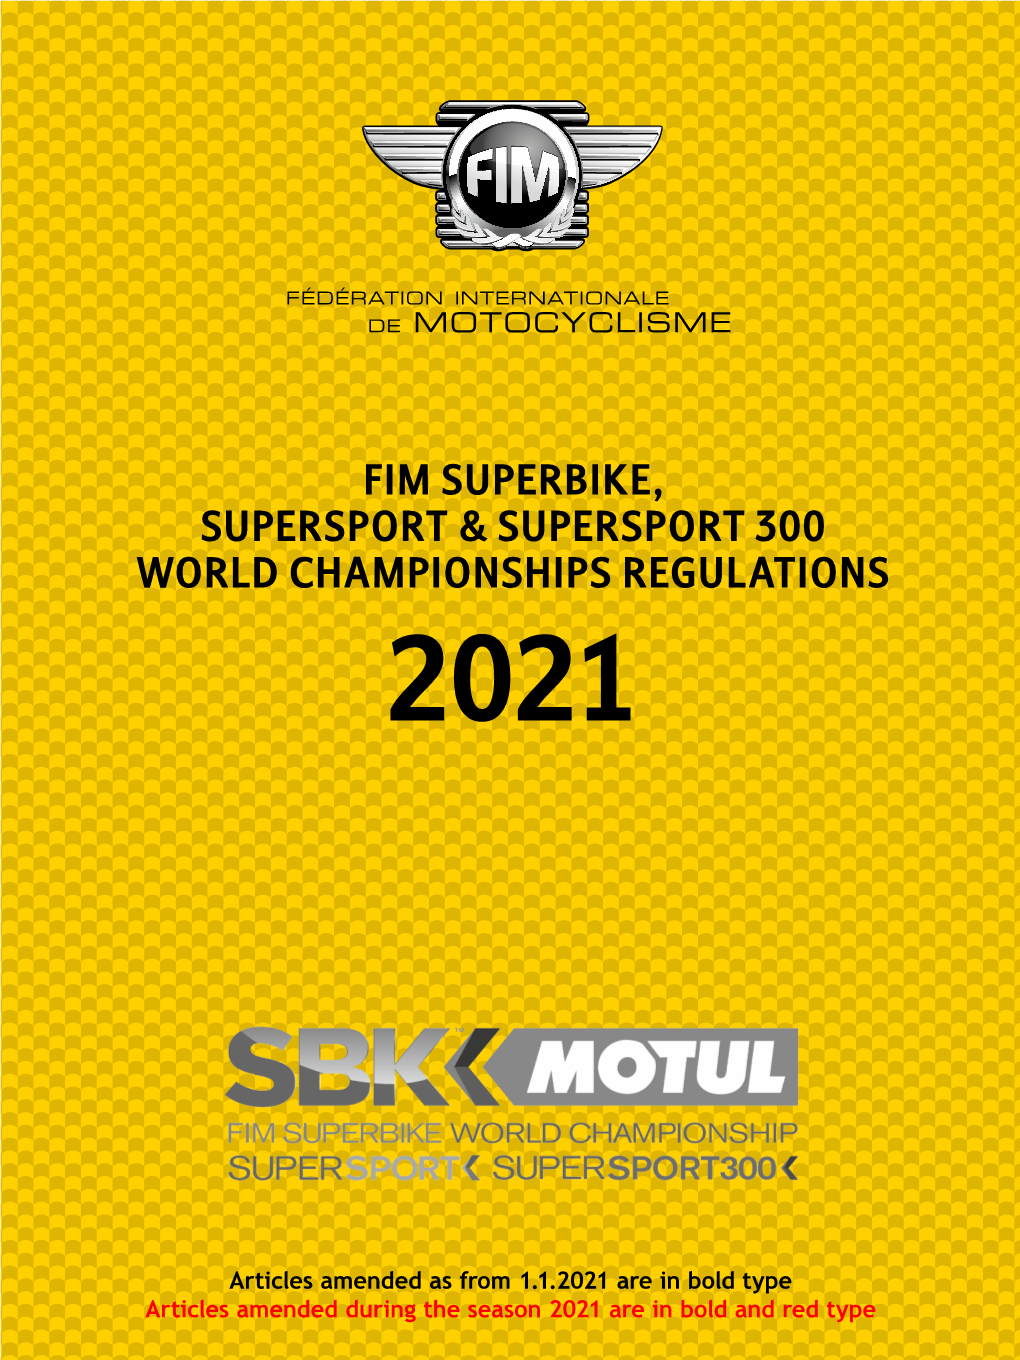 Fim Superbike, Supersport & Supersport 300 World